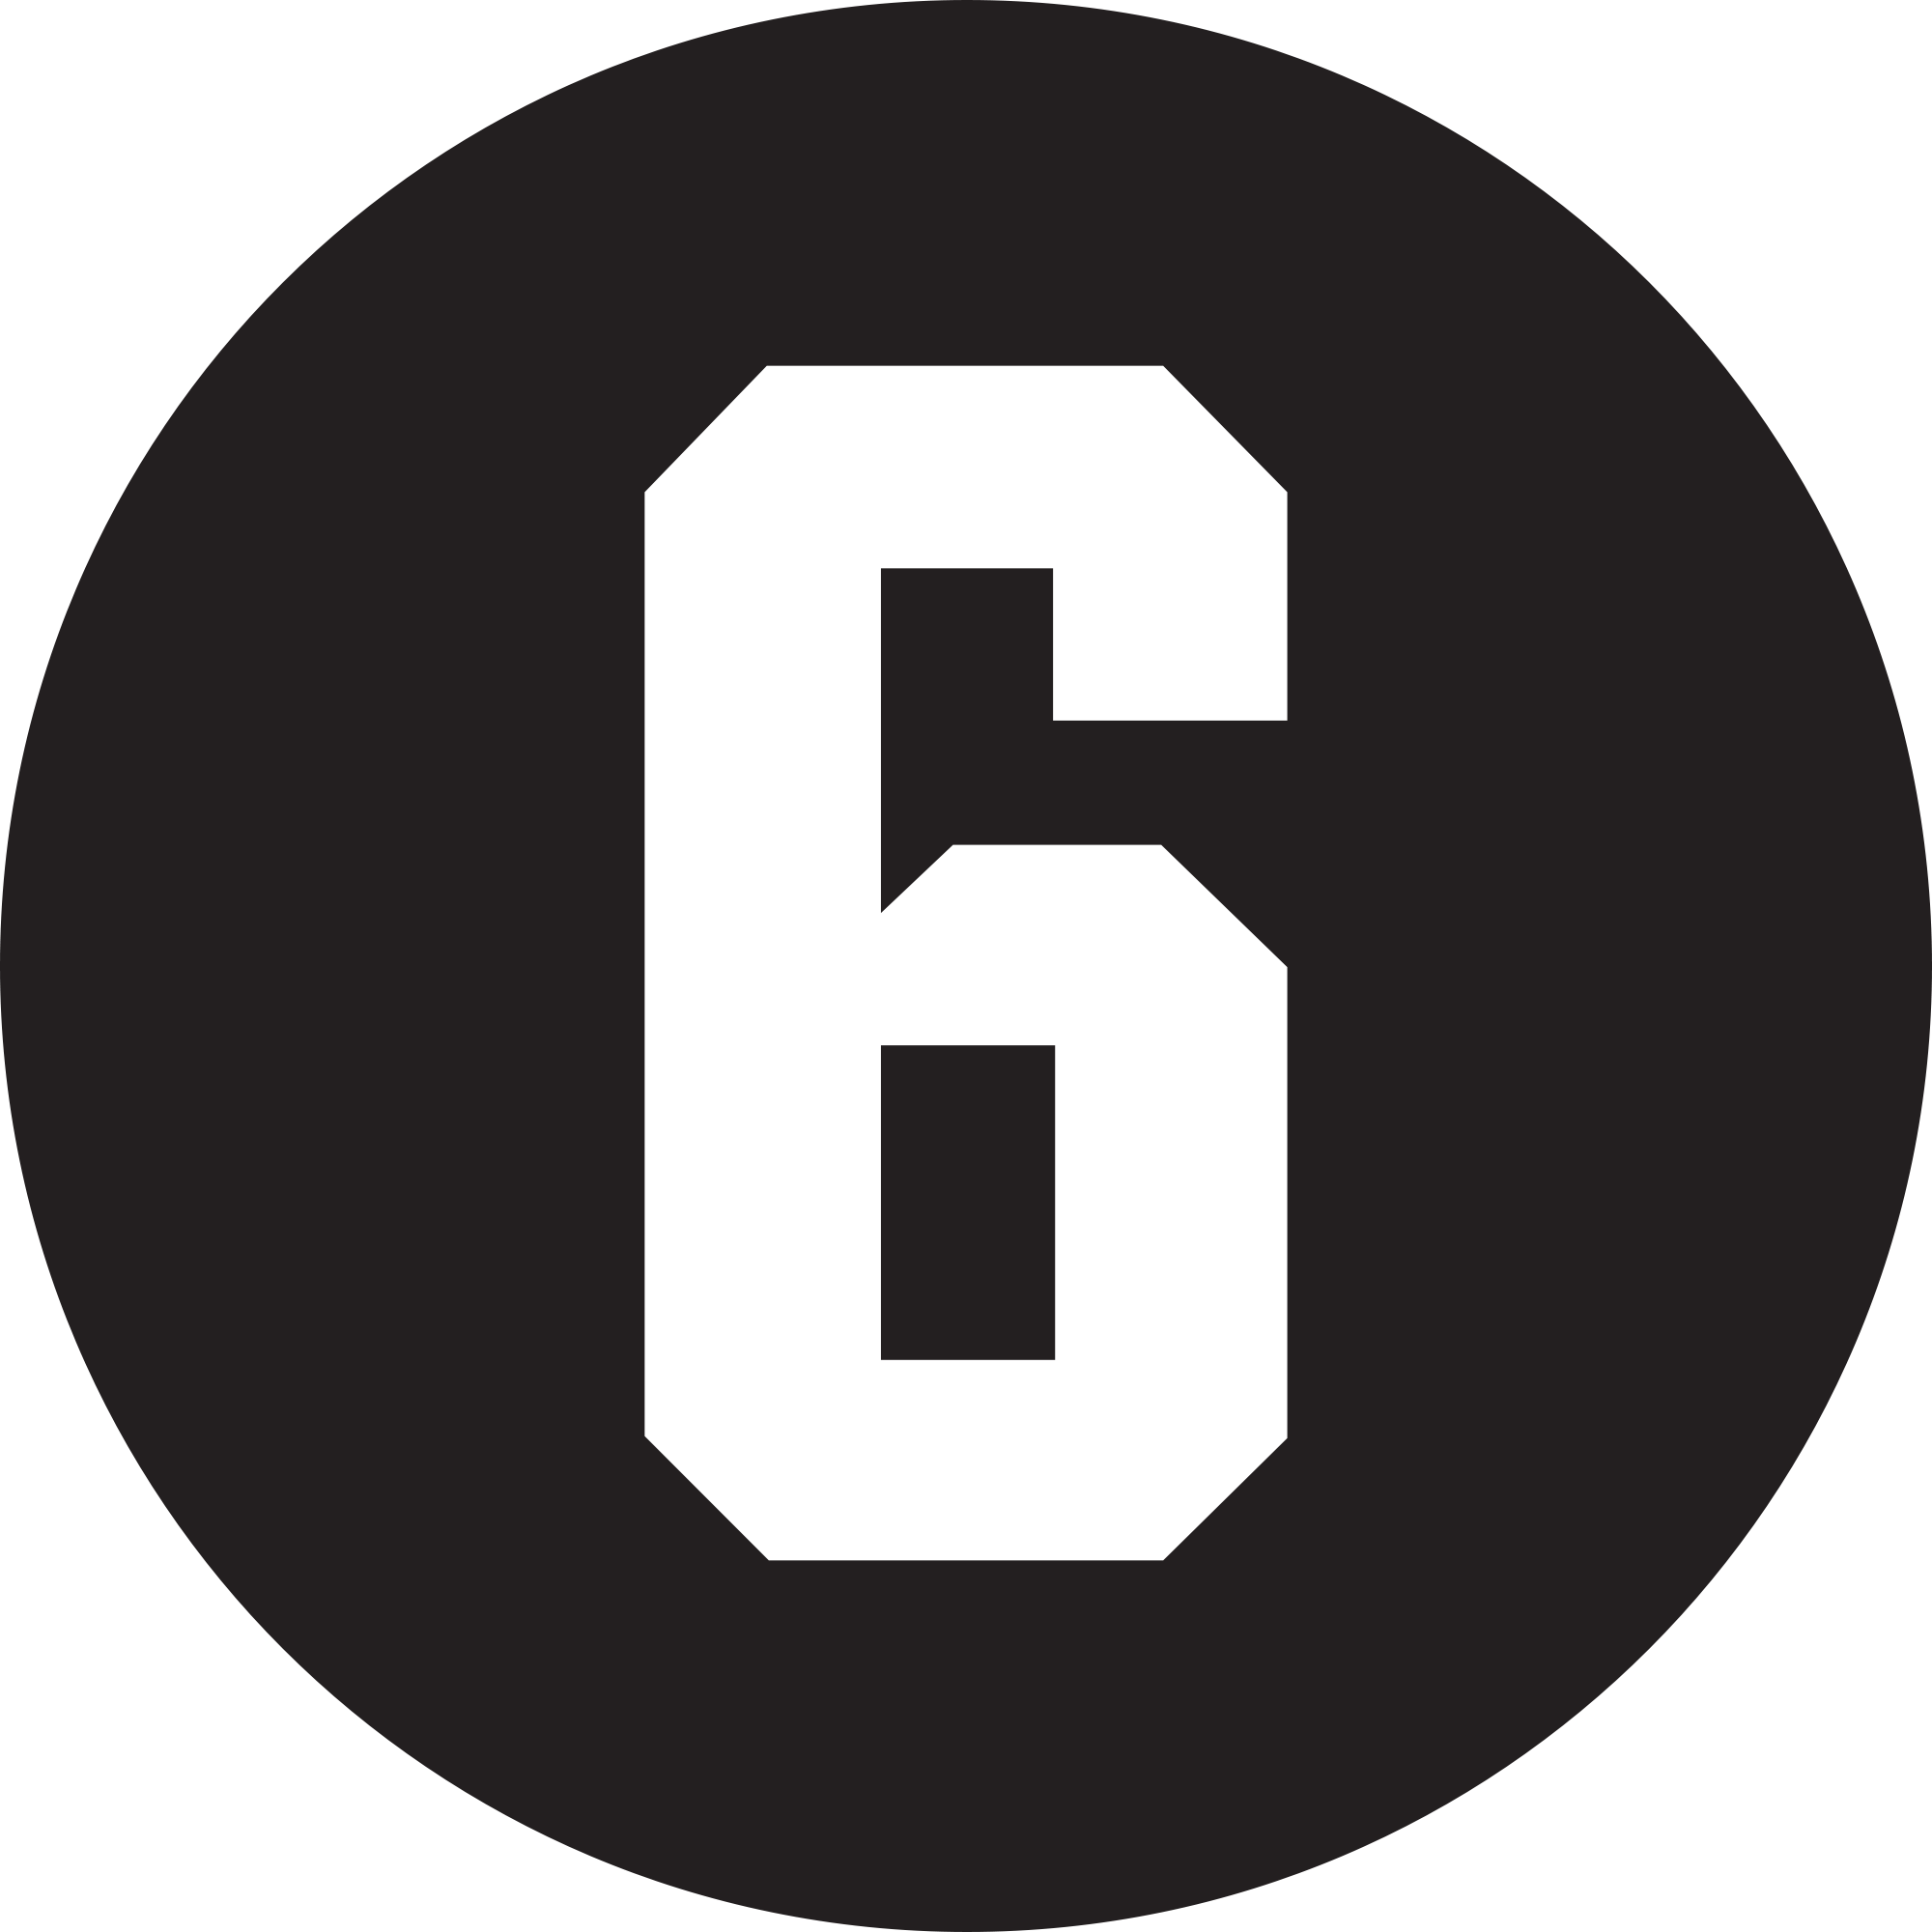 Аватарки цифры. Логотип 6. Эмблема с цифрами. 9 Класс аватарка на группу.